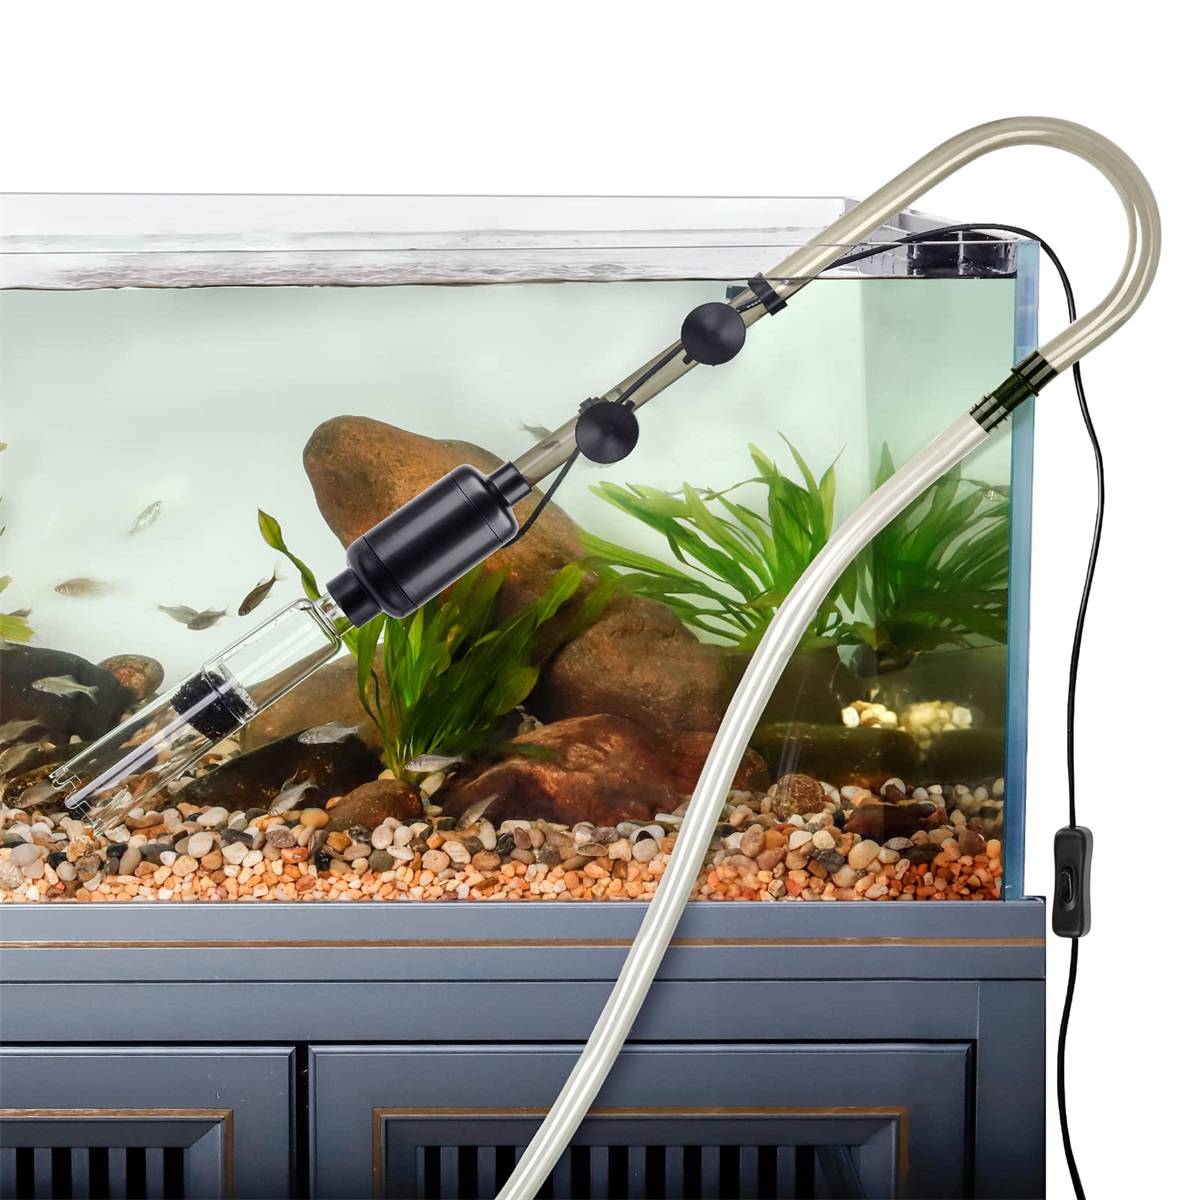 Should You Vacuum Your Aquarium Gravel?